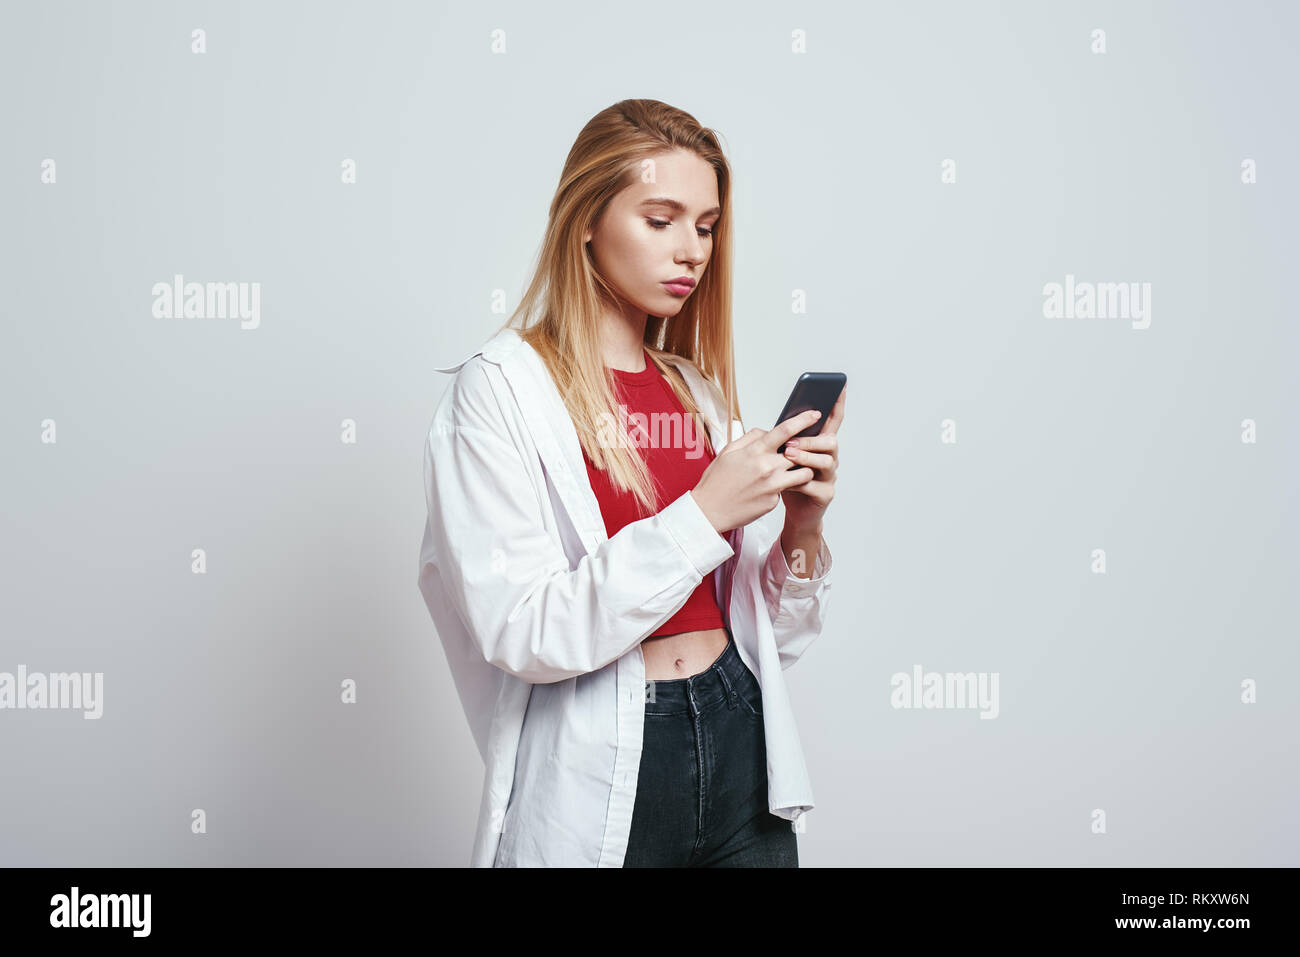 Immer verfügbar. Junge blonde Frau in einem Casual Wear mit Ihrem Smart Phone. Grauer Hintergrund. Digitale Konzept Stockfoto